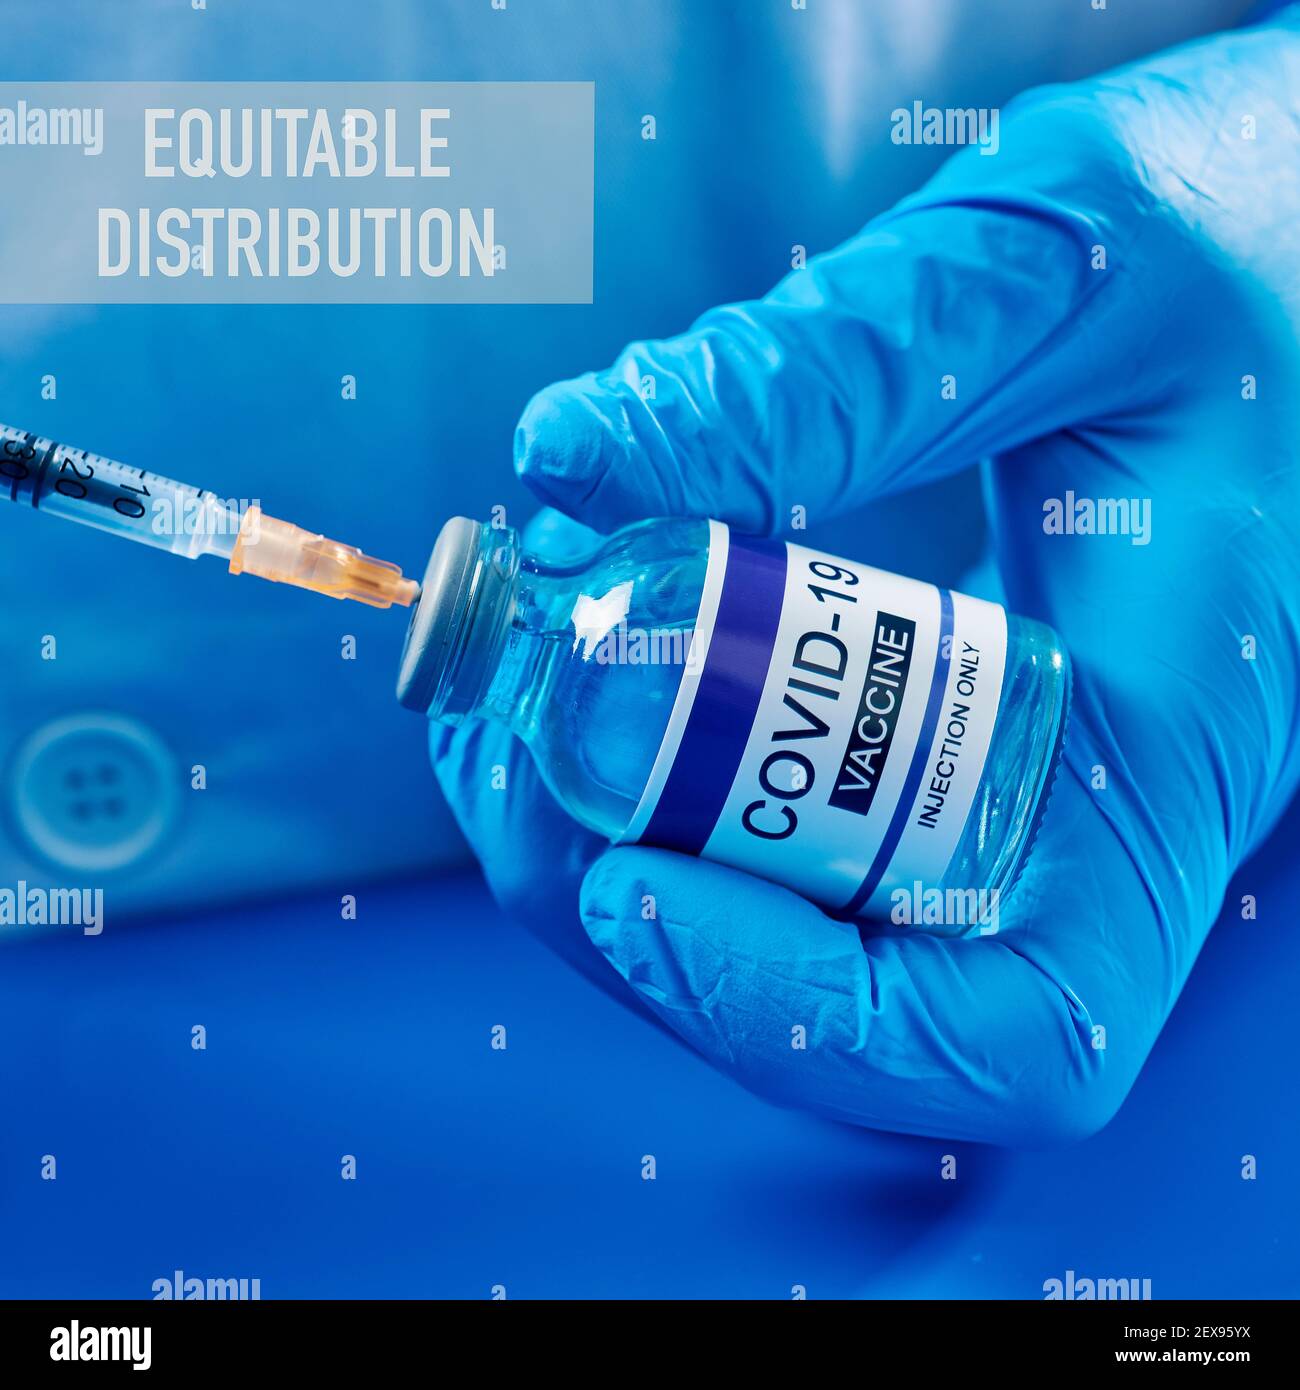 chiusura di una persona, indossando camice bianco e guanti chirurgici blu, riempire una siringa da un flaconcino simulato di vaccino covid-19, e il testo equitable Foto Stock